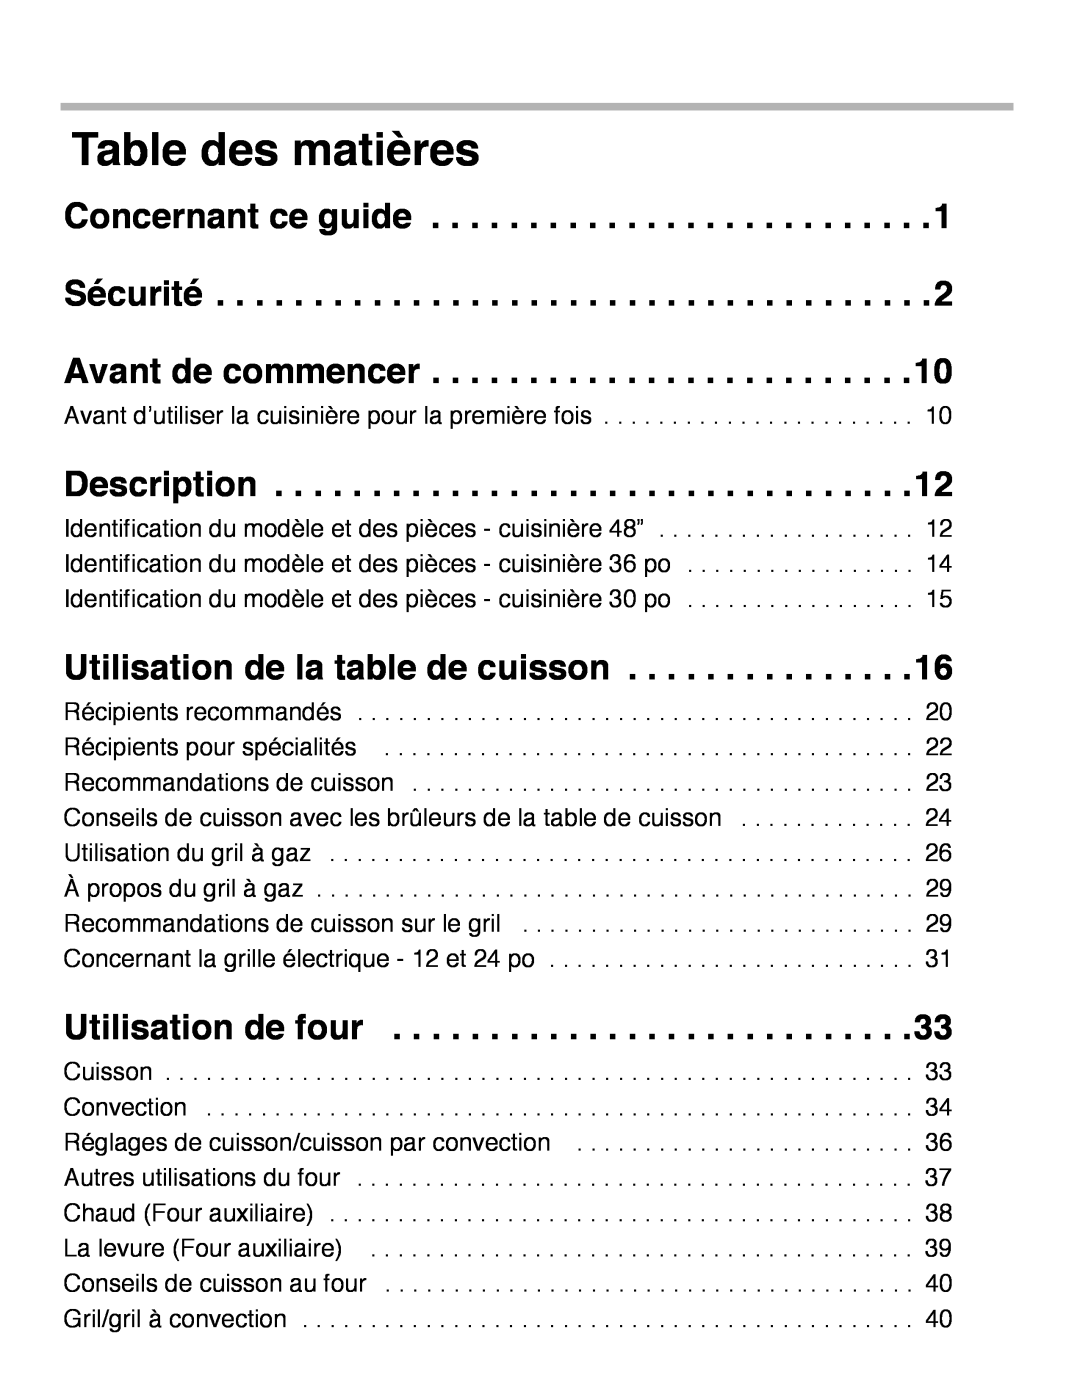 Thermador PRD48, PRD36, PRD30 manual Table des matières 